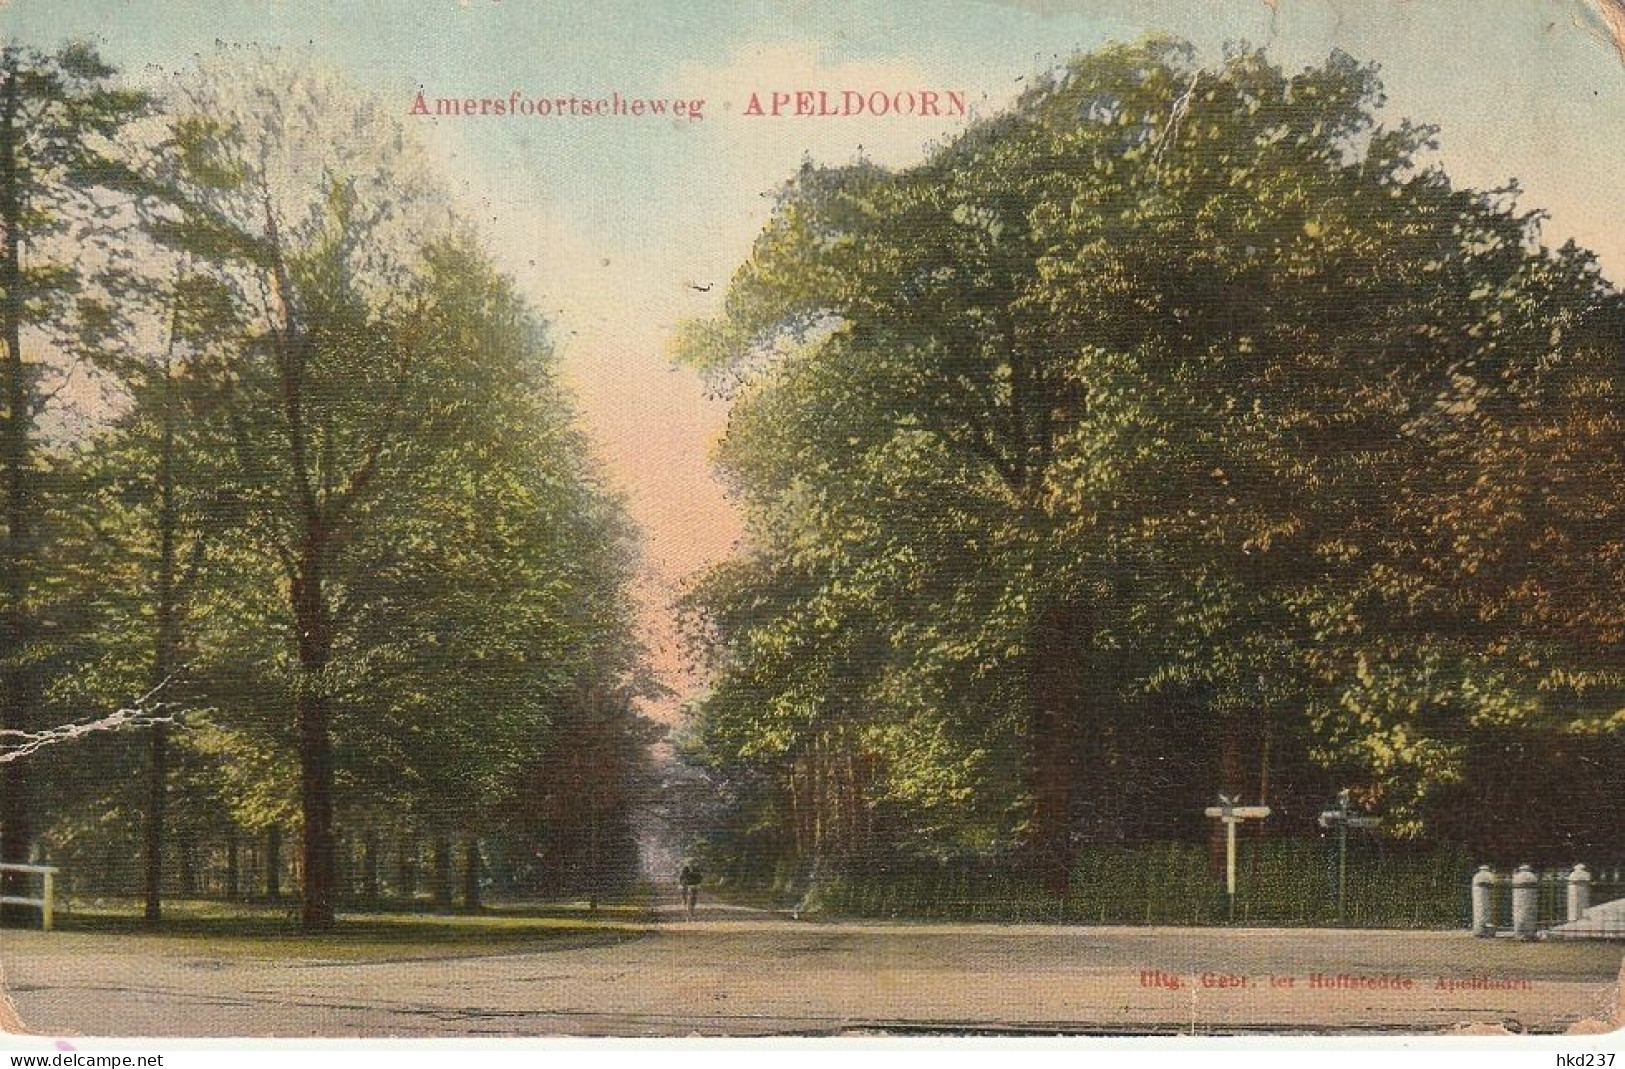 Apeldoorn Amersfoortscheweg # 1920        4375 - Apeldoorn